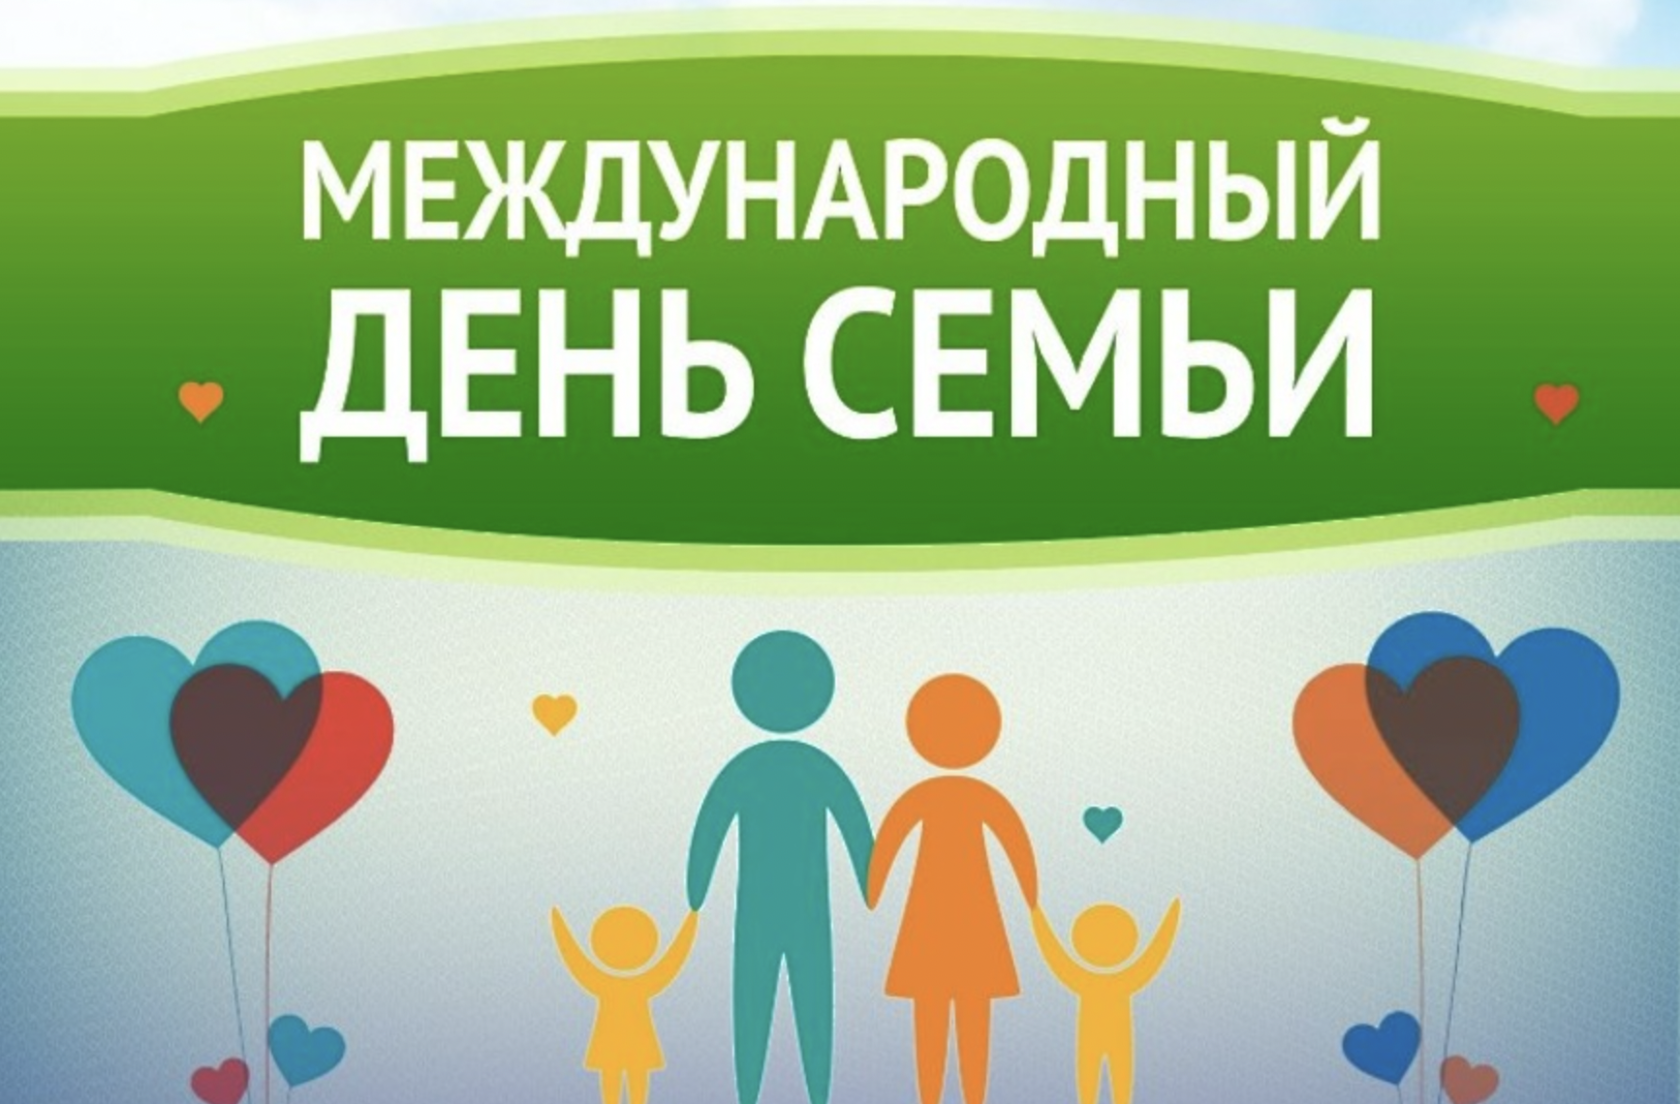 Семья года в беларуси. Международный день семьи. День семьи 15 мая. Международный день семь. Международный деньснмьи.